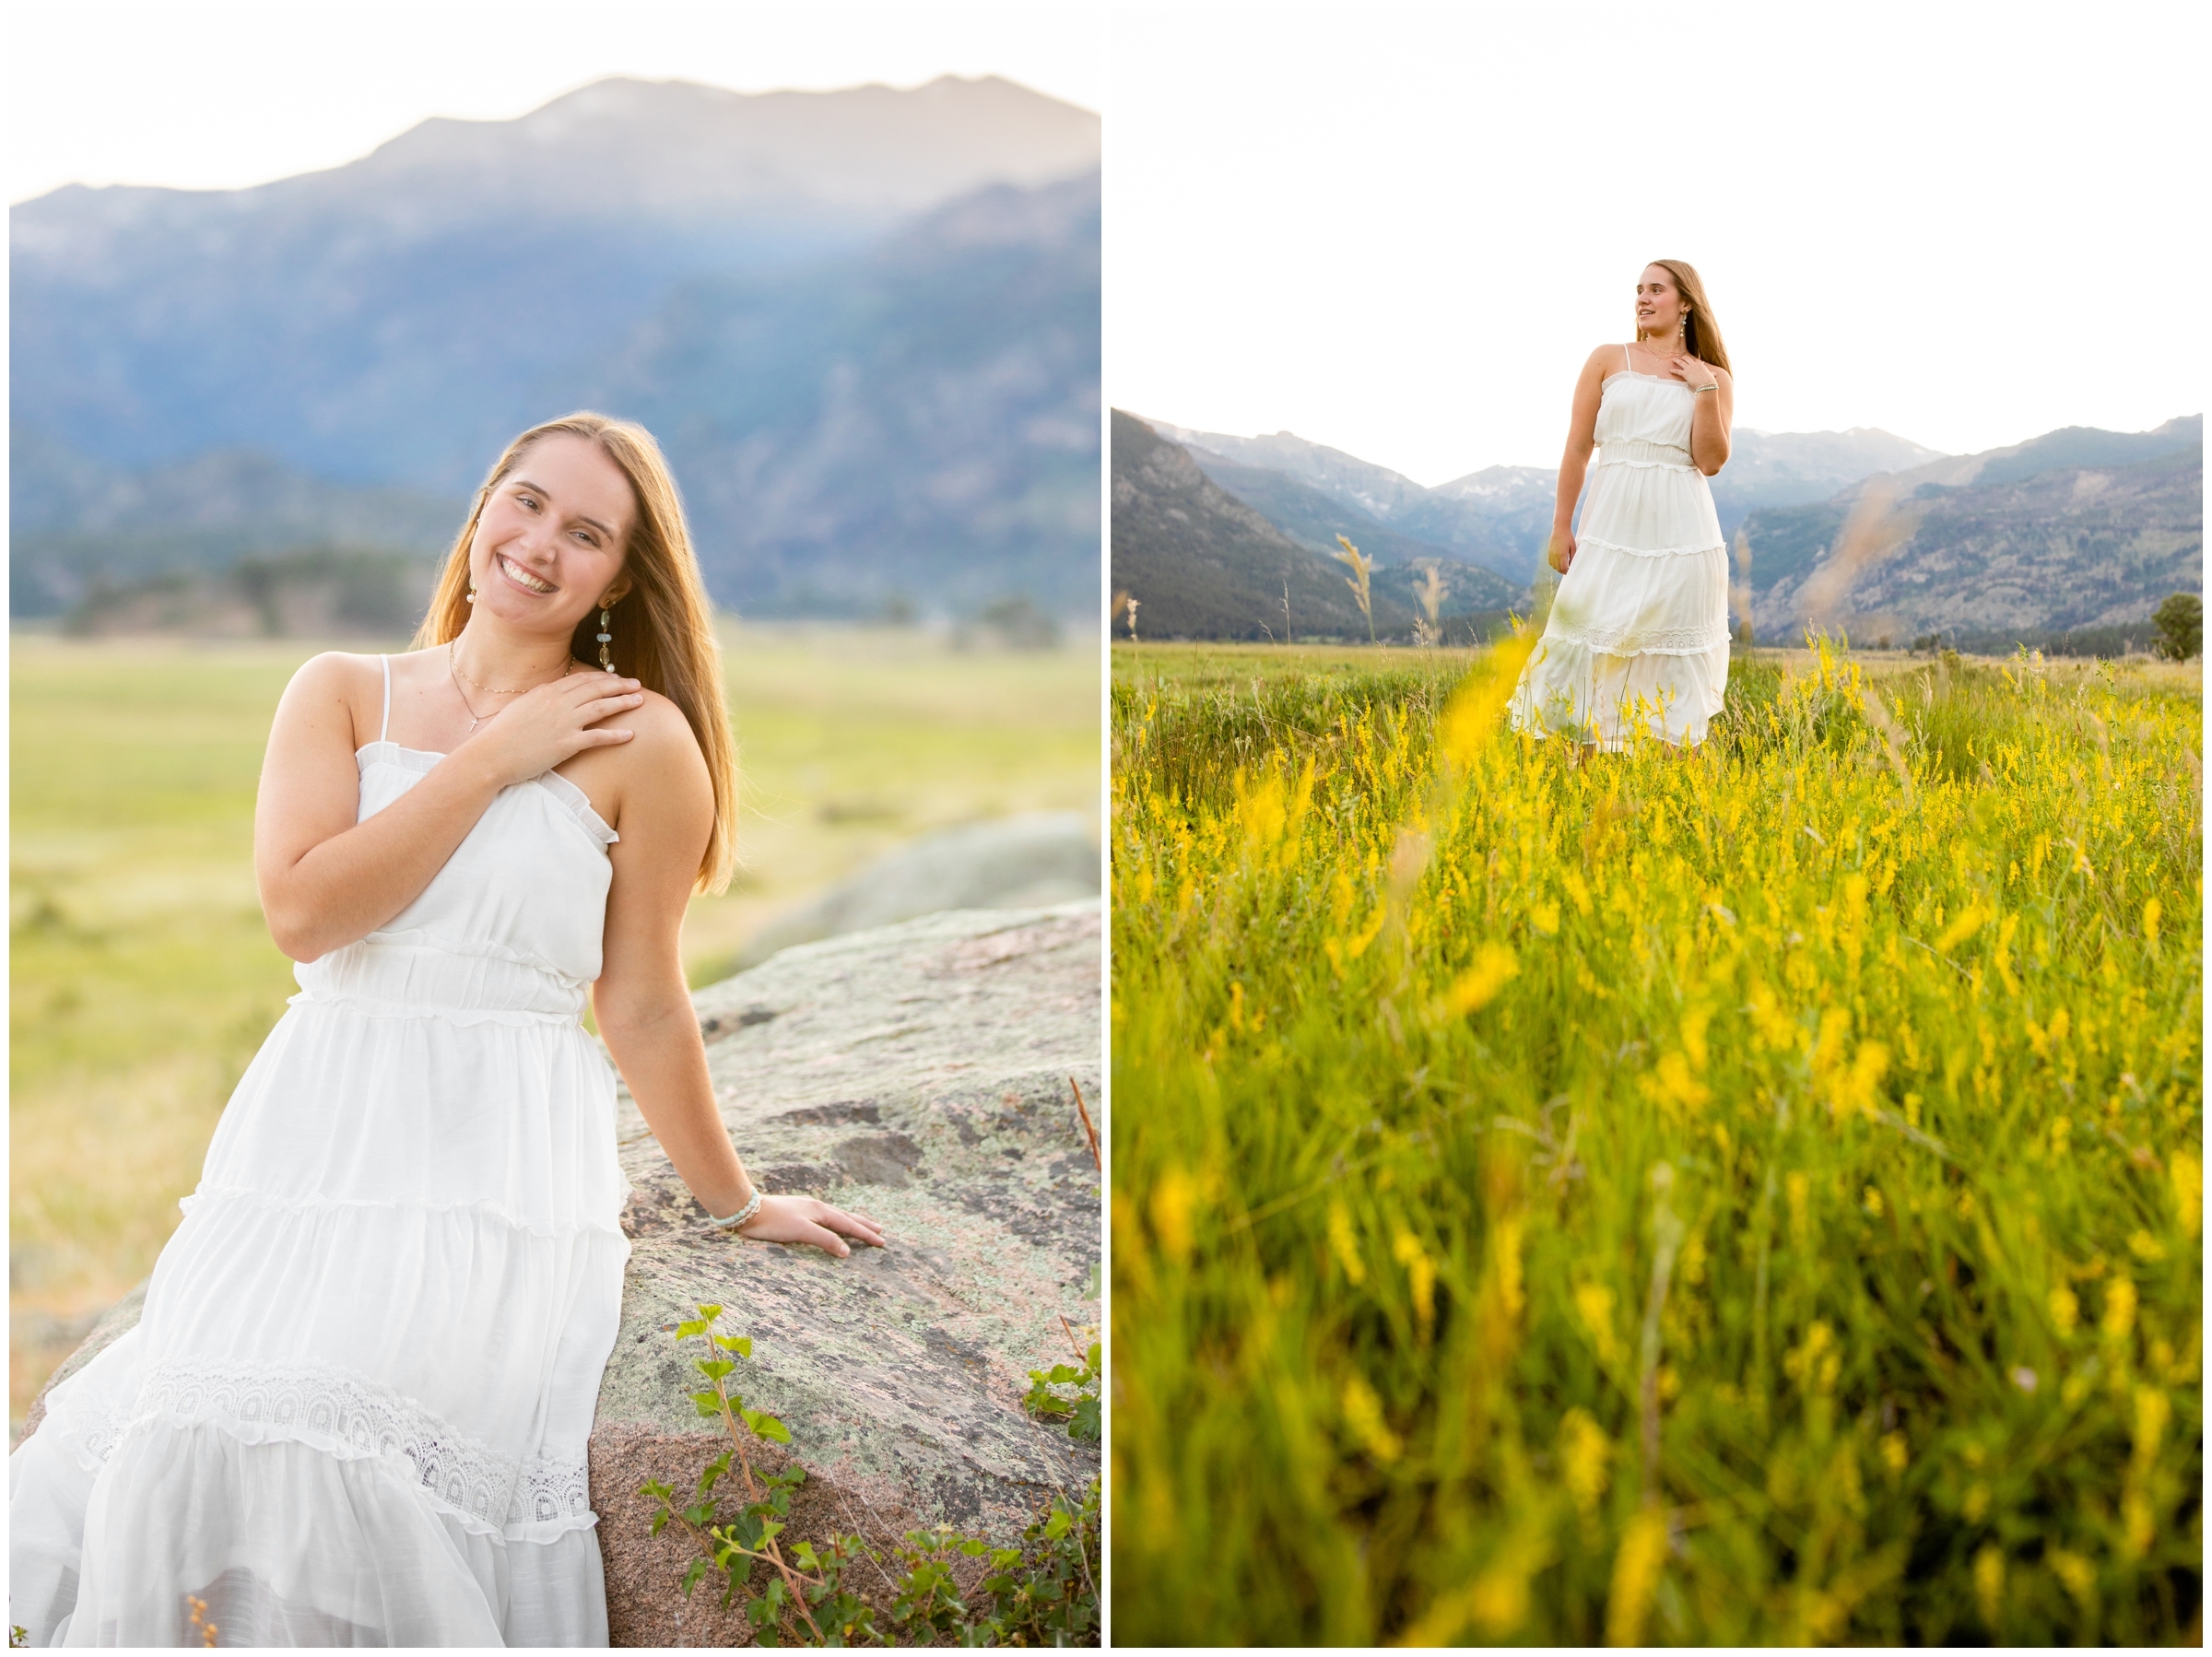 Mountain senior pictures in Colorado by Estes Park portrait photographer Plum Pretty Photography